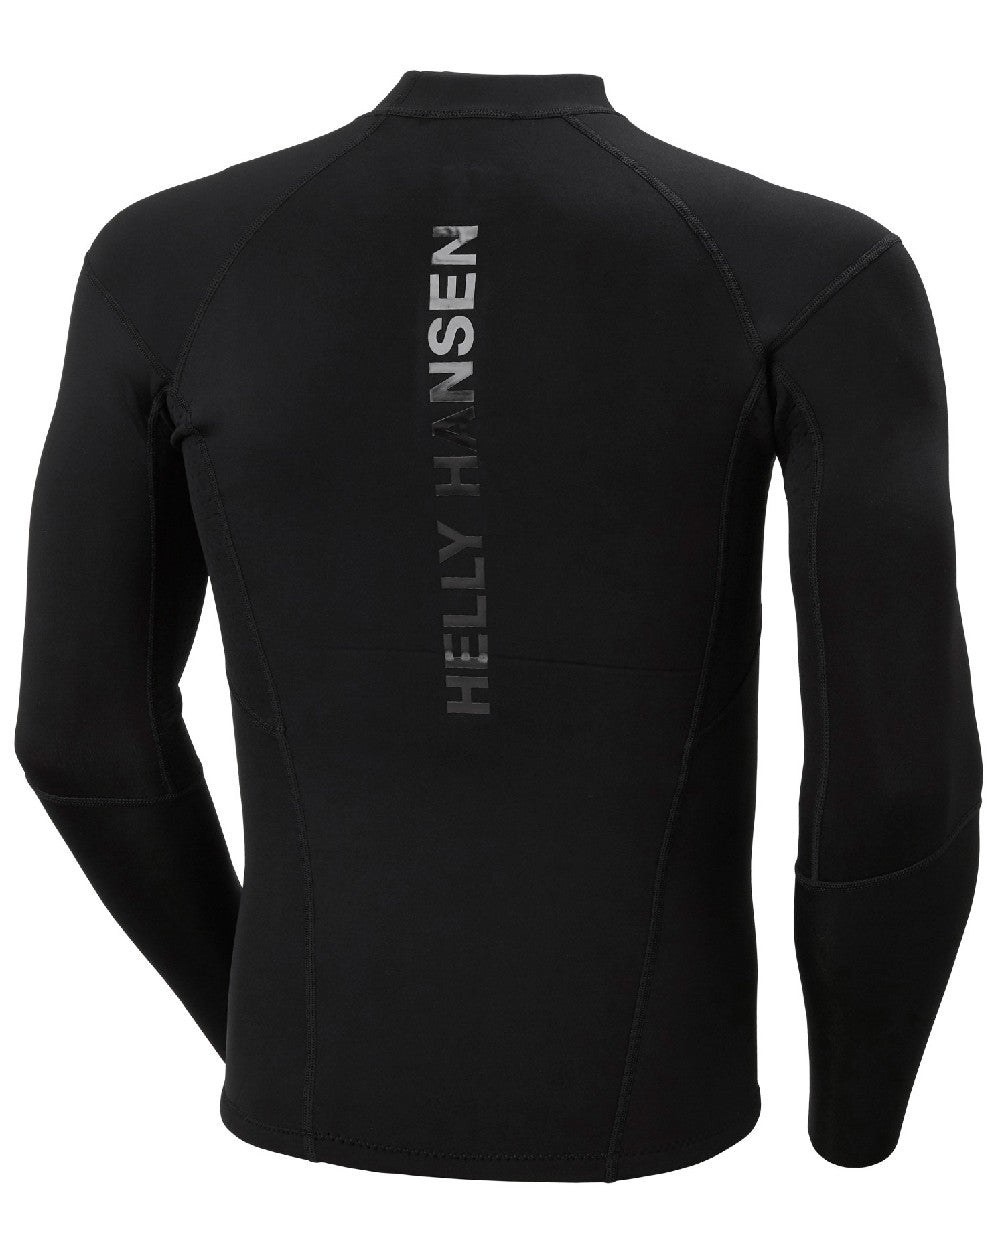 Black coloured Helly Hansen Unisex Waterwear Top on white background 